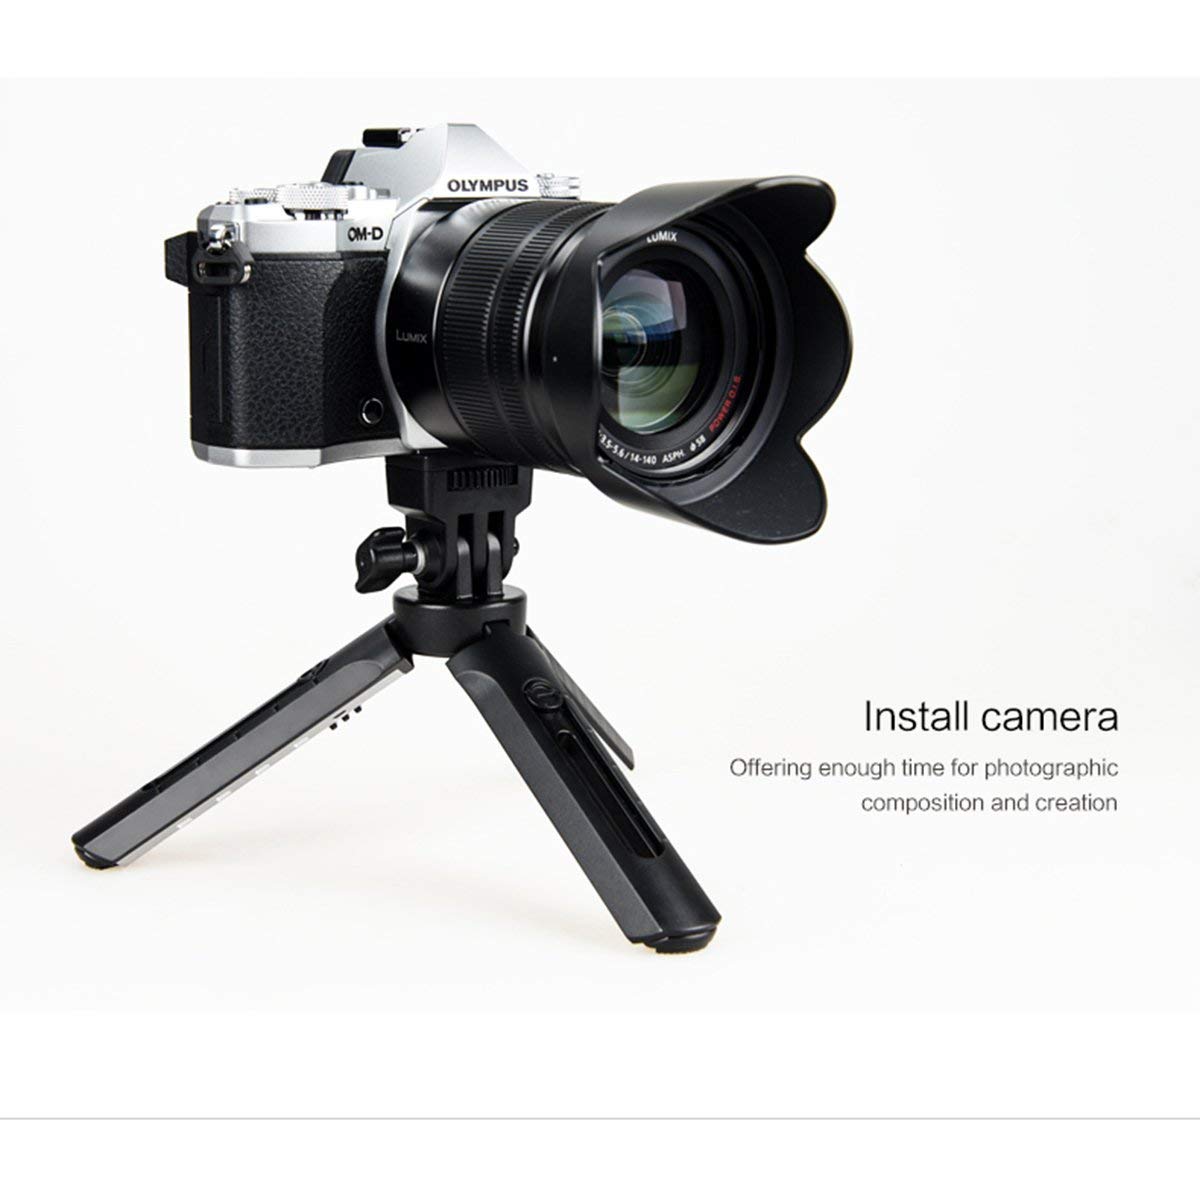 Godox - Conns Cameras